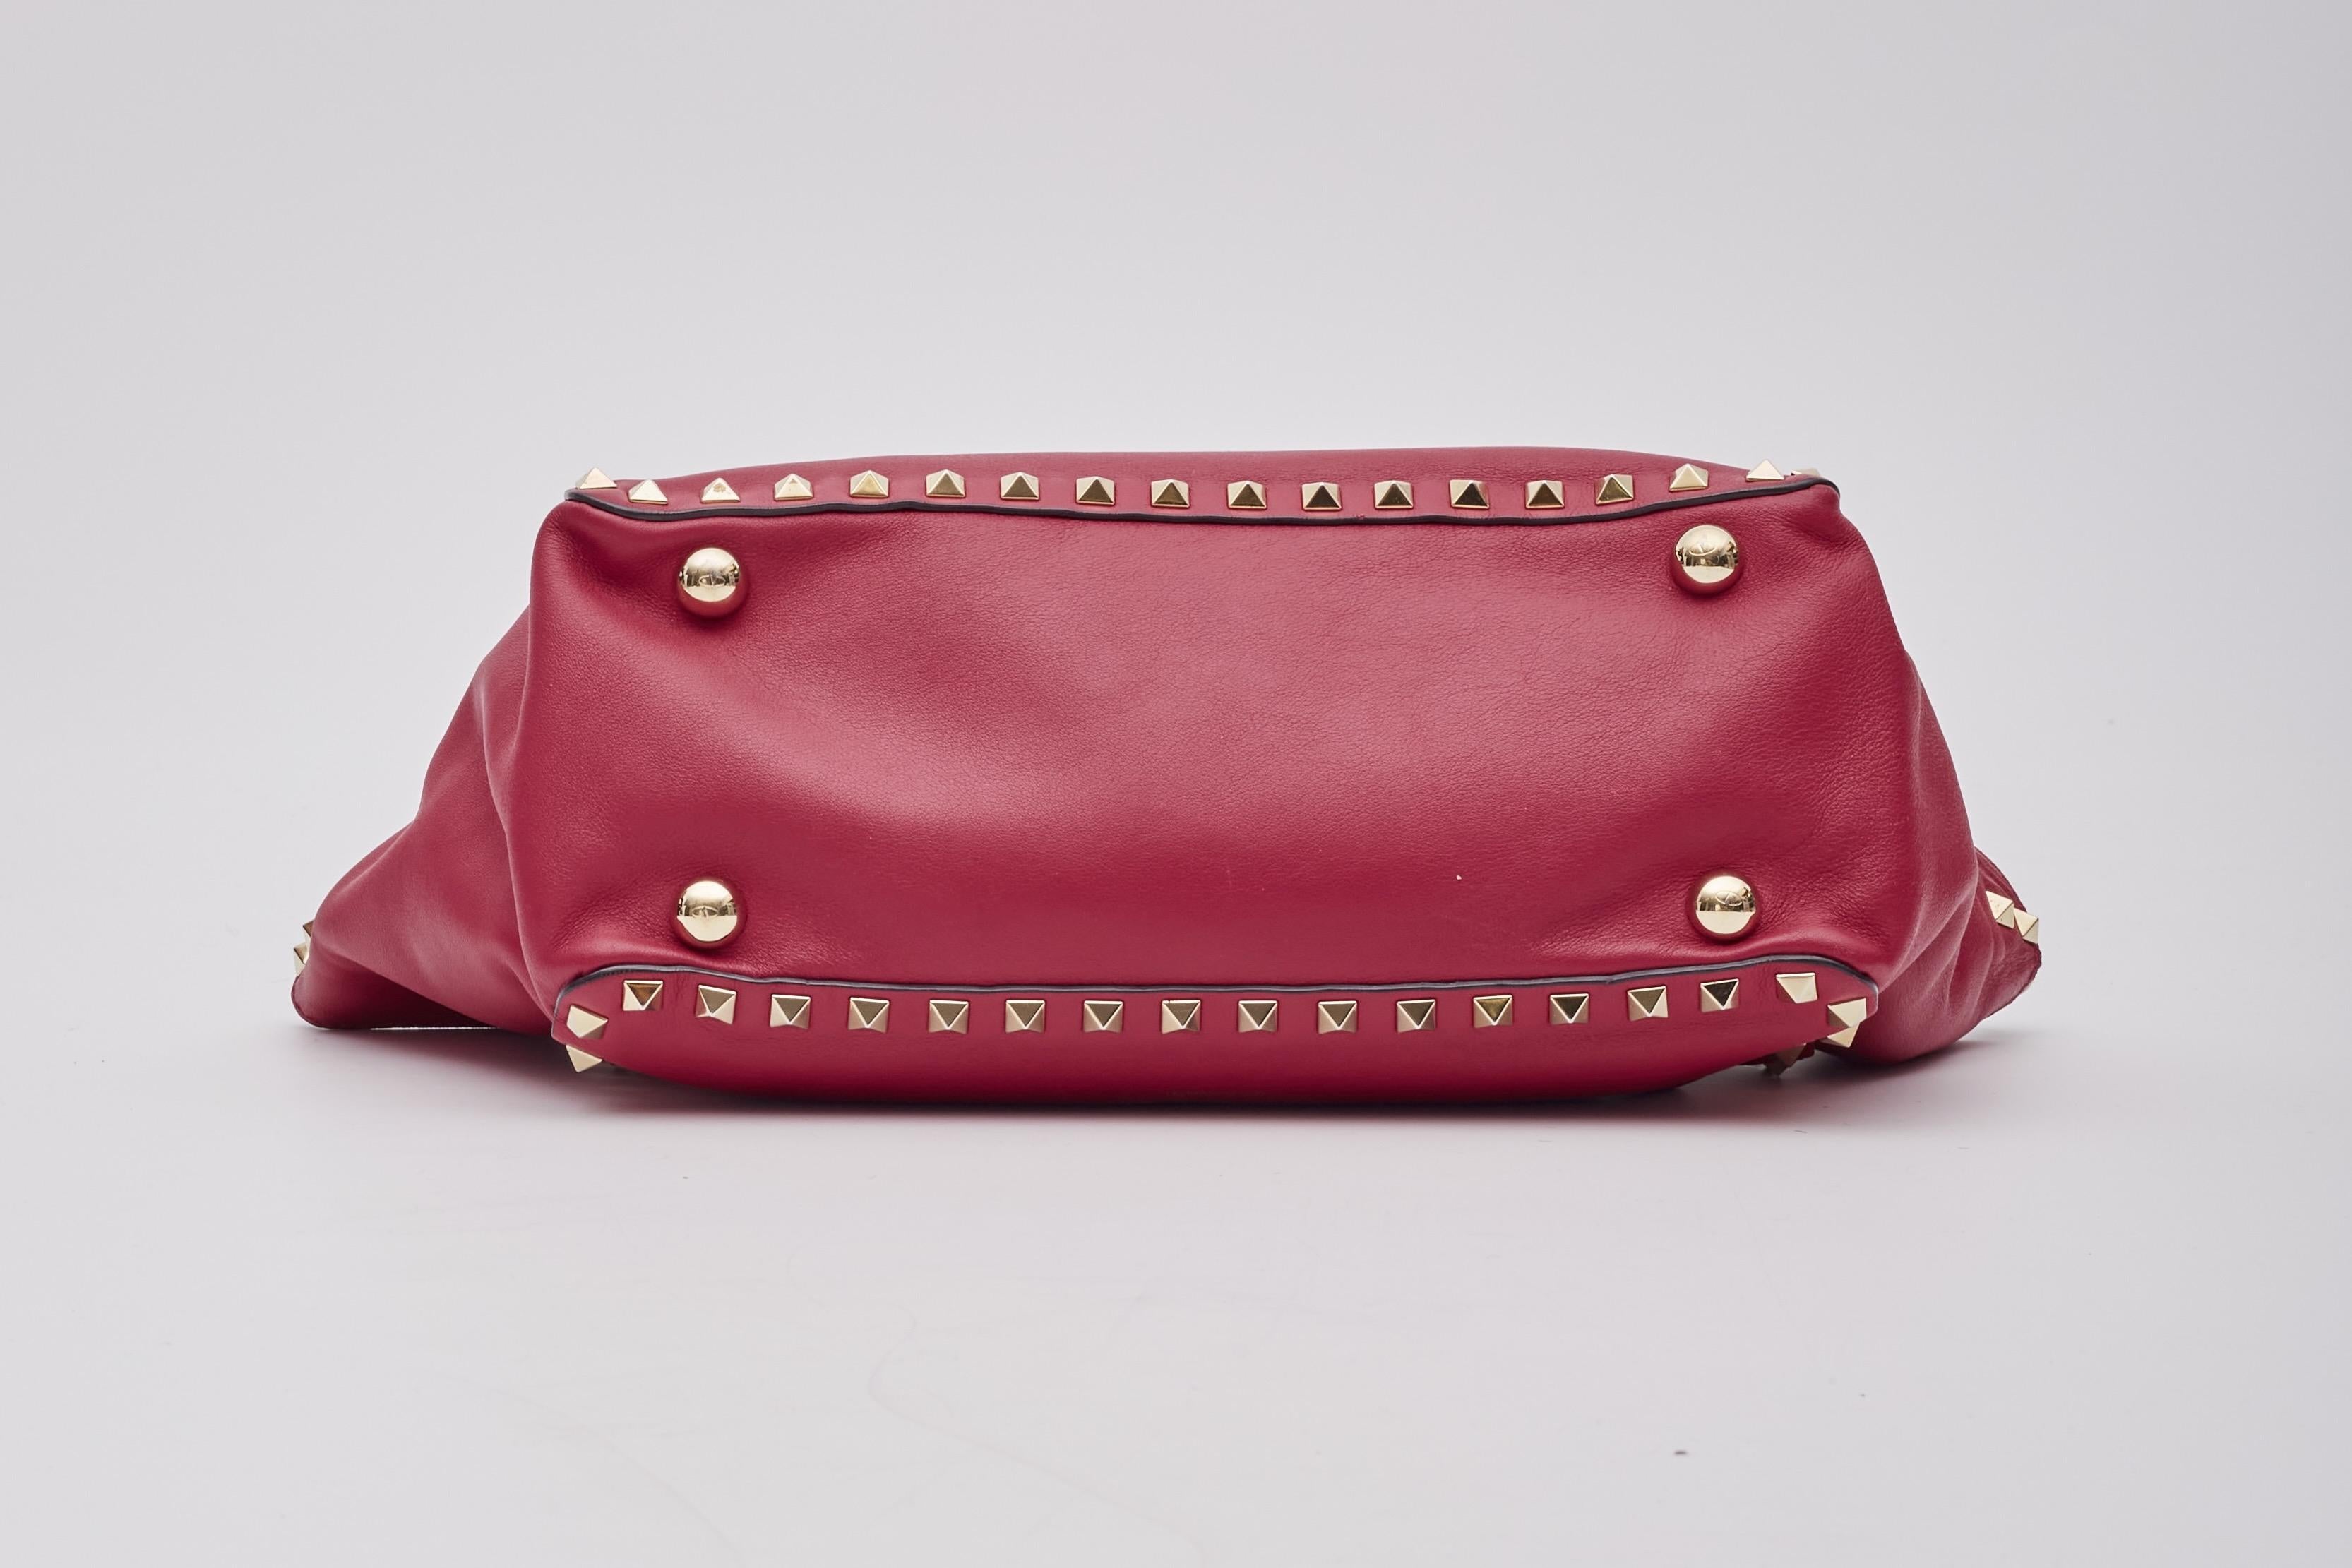 Valentino Garavani Red Leather Rockstud Shoulder Bag For Sale 2